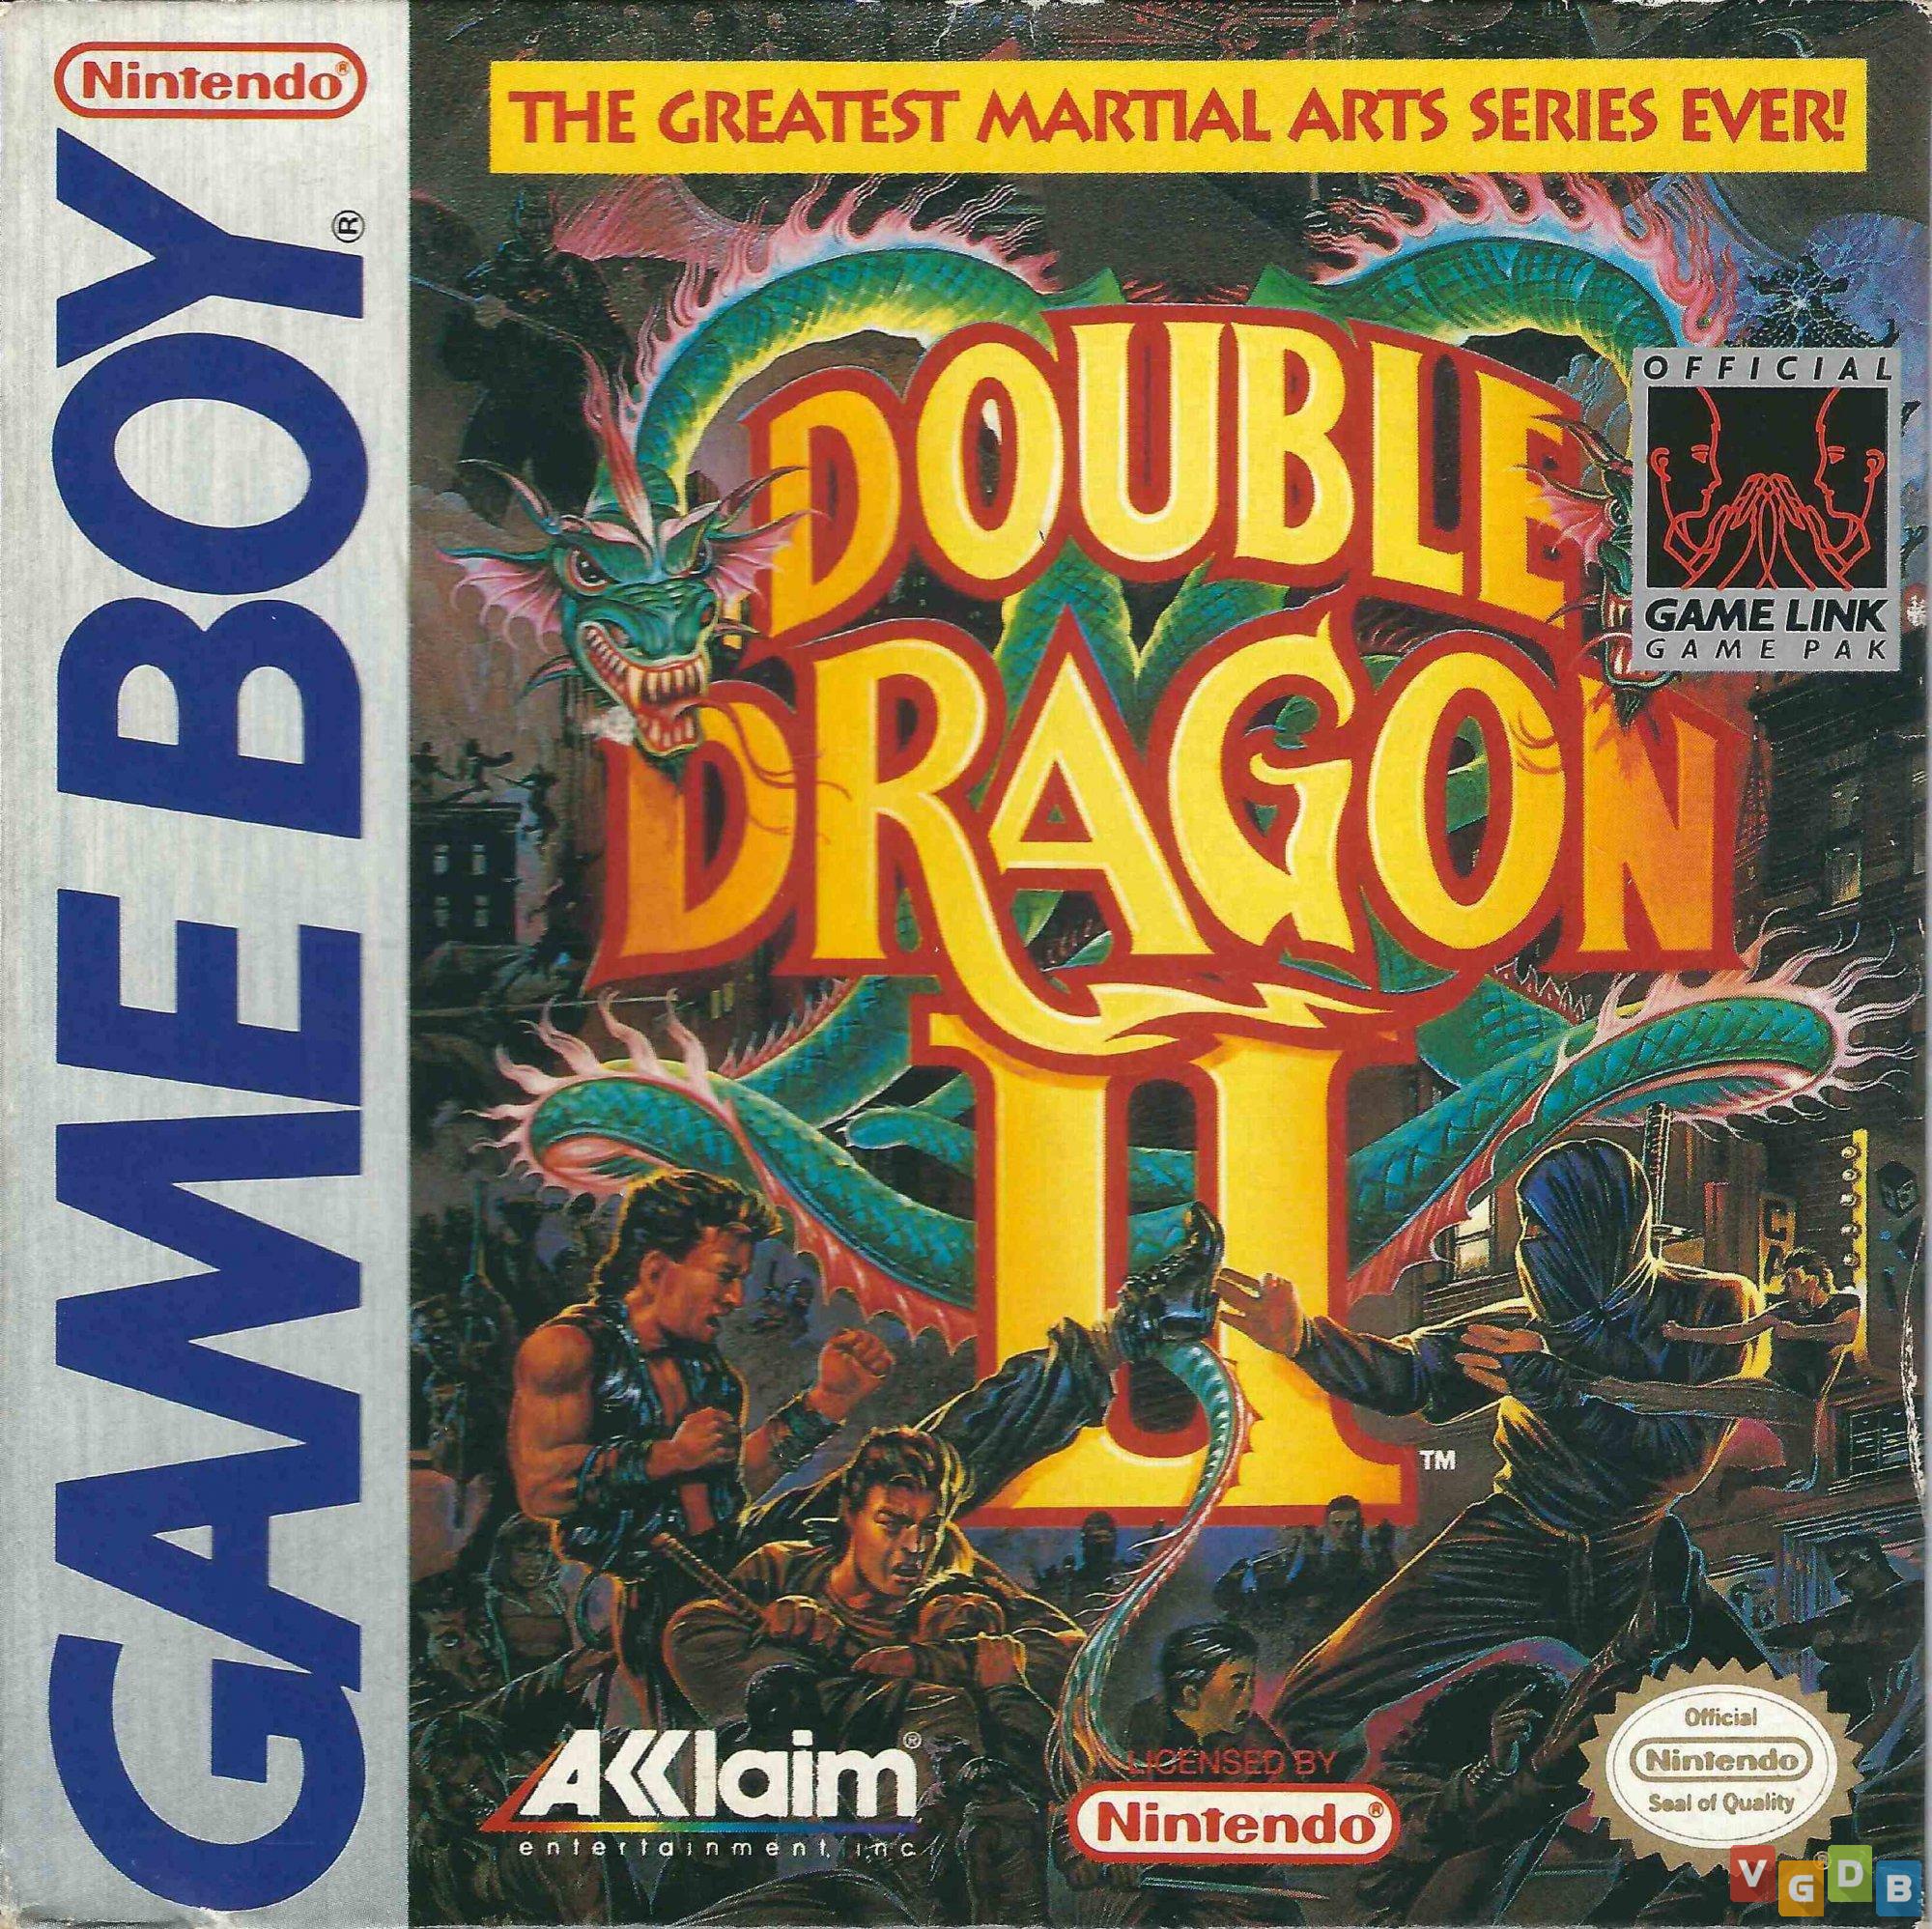 Double Dragon Dojo: Double Dragon II Commodore 64 version review